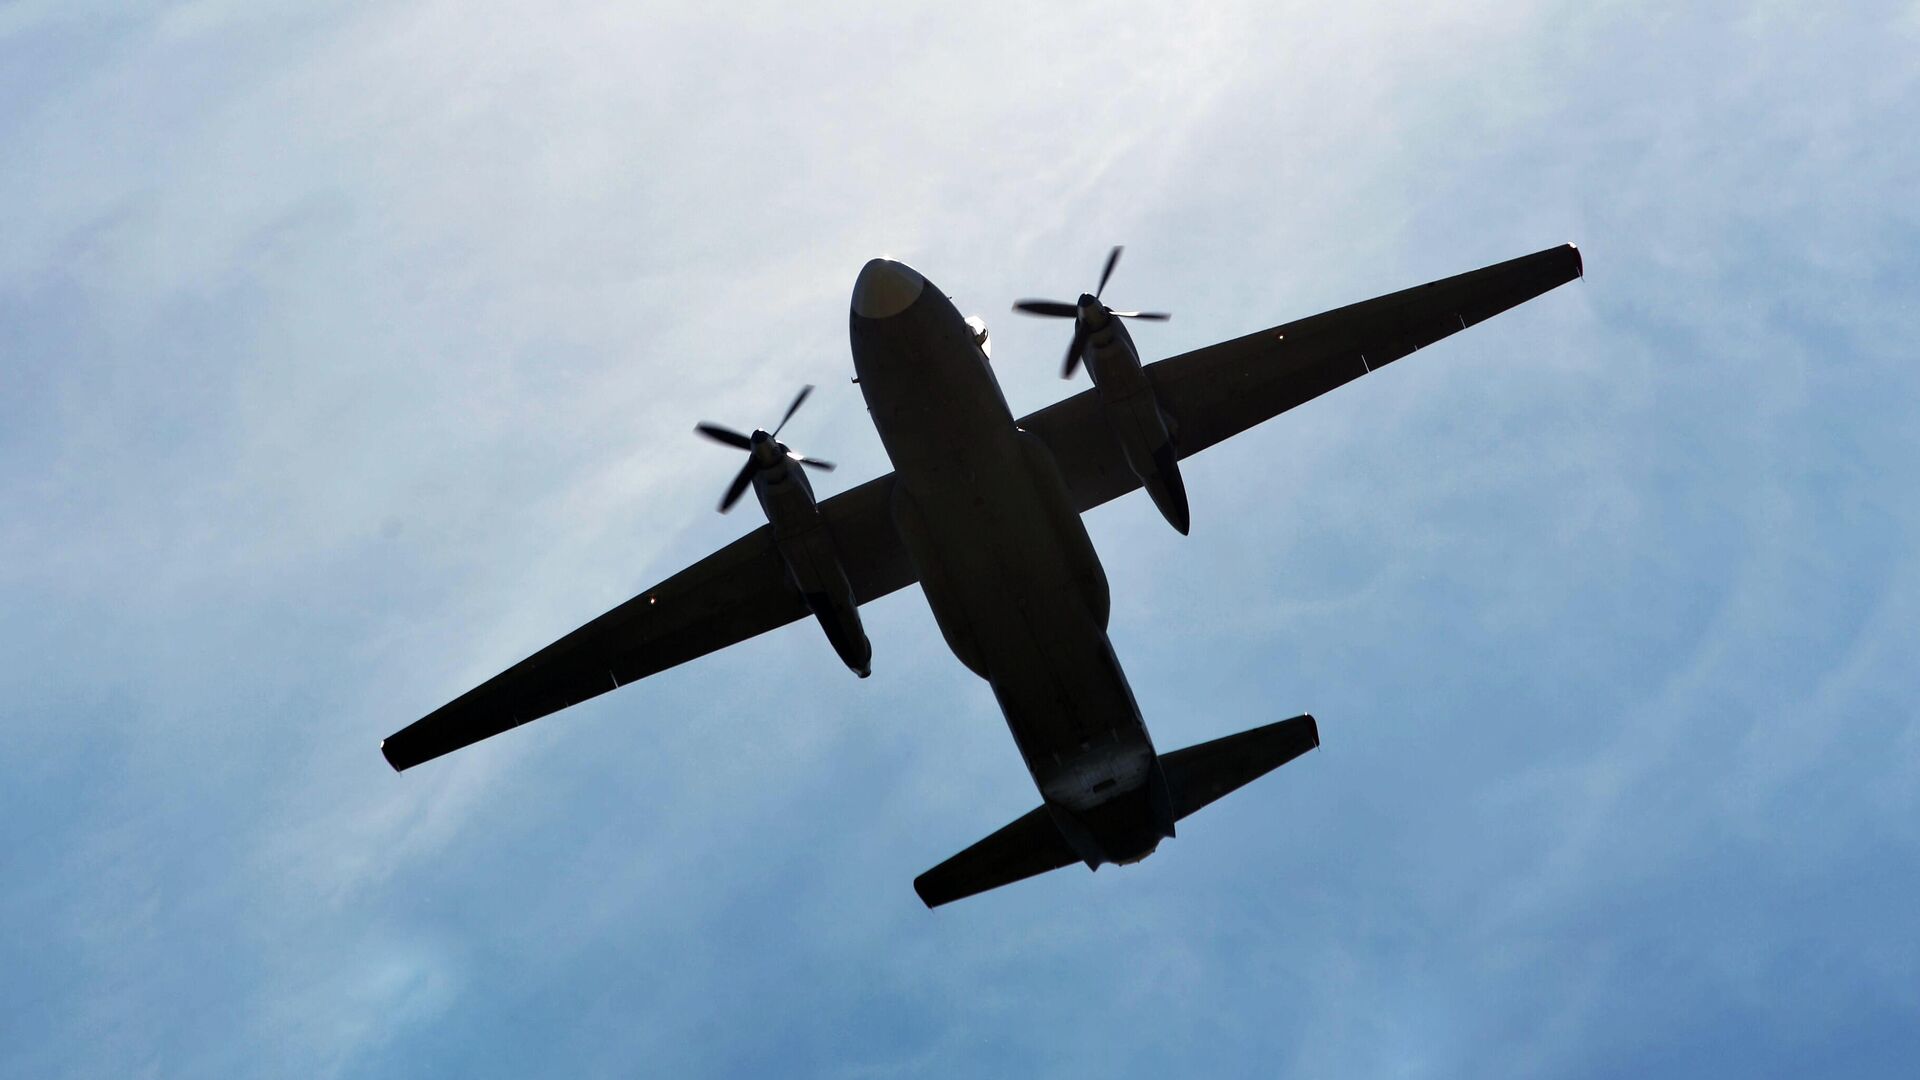 После исчезновения Ан-26 на Камчатке открыли горячую линию